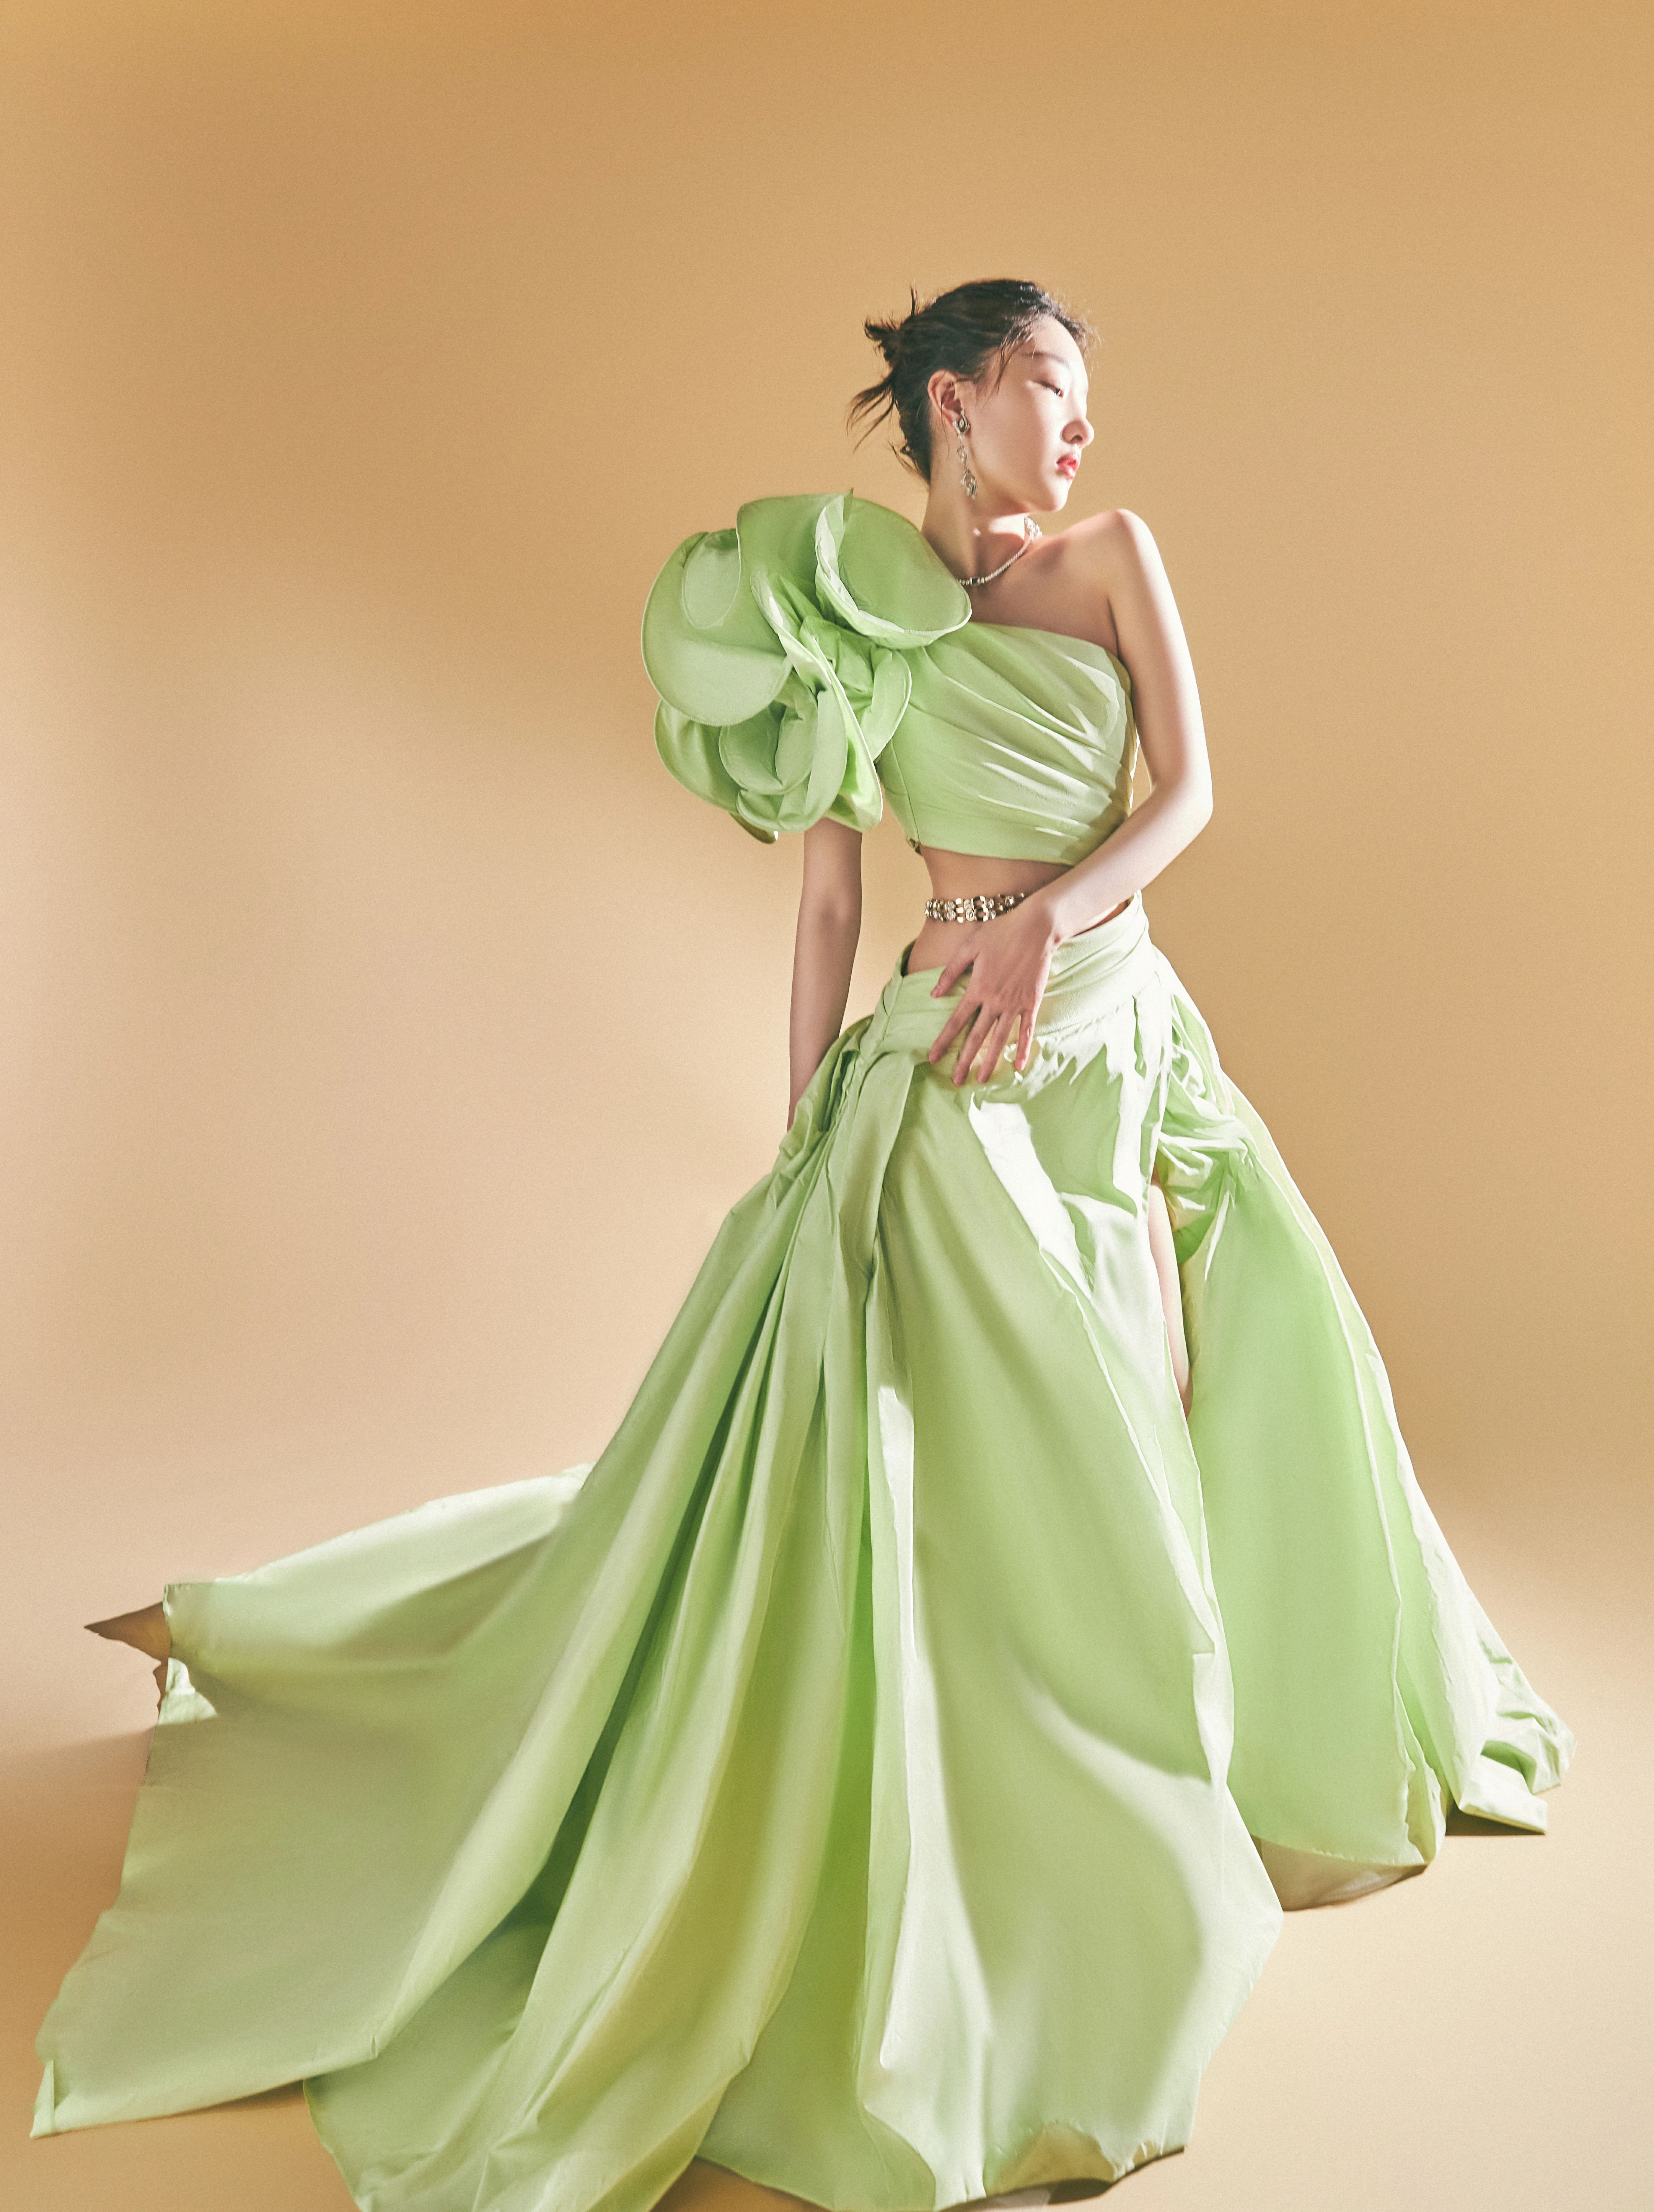 周冬雨上影节红毯造型图曝光 绿色拖地长裙清新优雅,